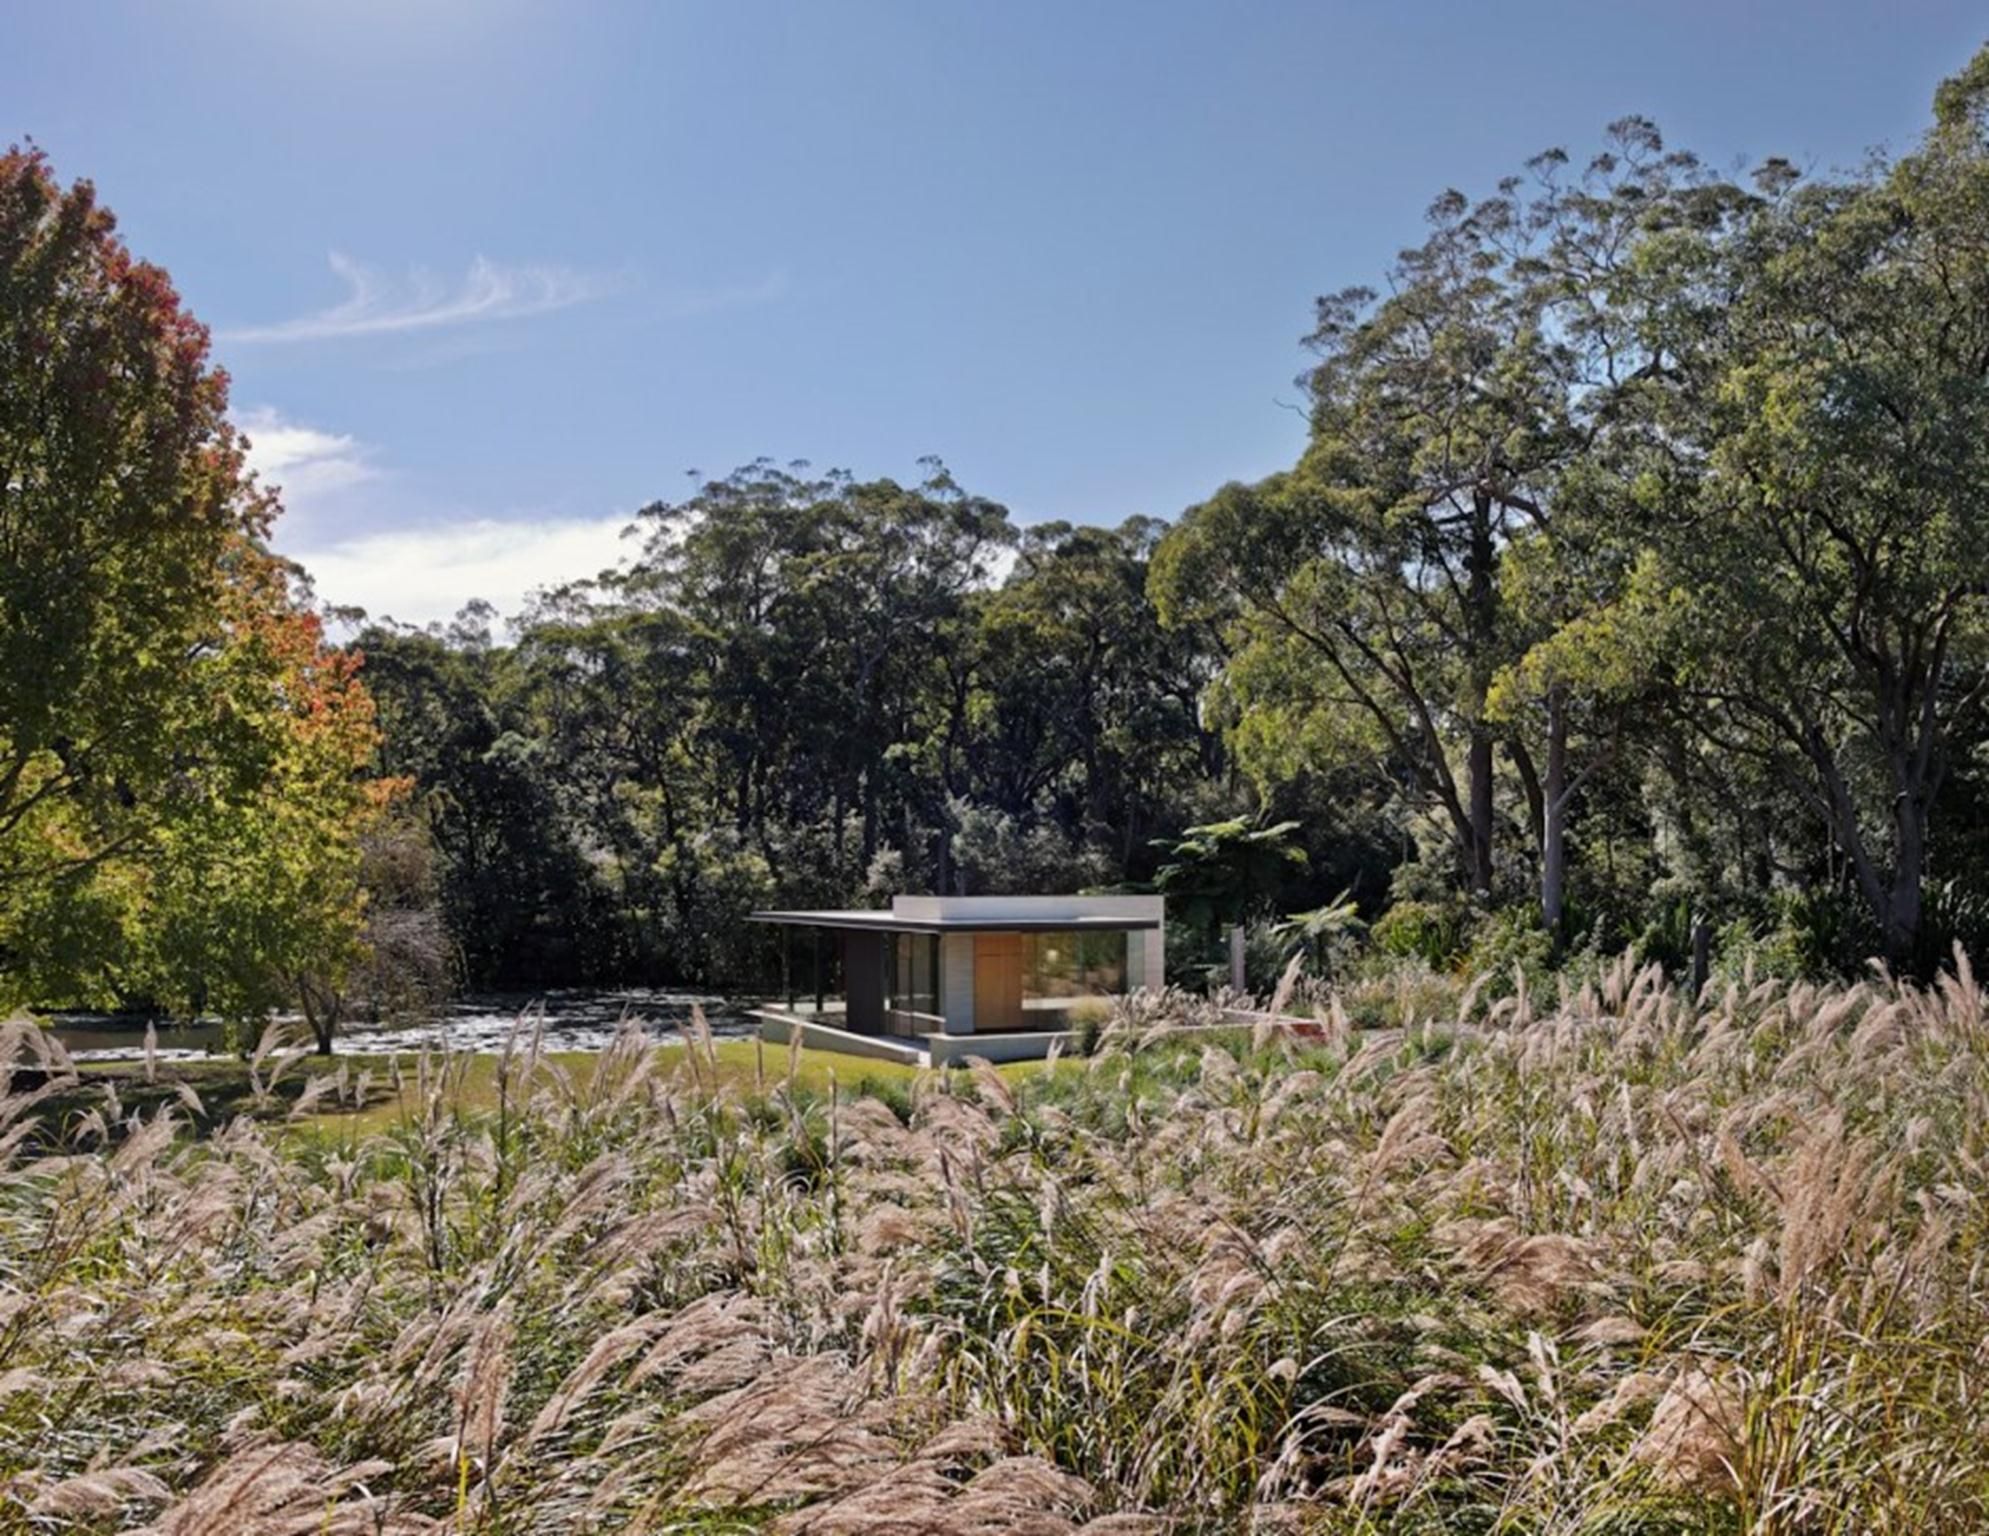 Wirra Willa Pavilion, tiếng bản địa Úc, có nghĩa là cây xanh. Kiến trúc sư cho biết, mục đích của dự án này là để kết nối giữa cảnh quan và địa điểm, cung cấp cho người cư ngụ một không gian thoáng đãng được bao quanh bởi những khu vườn trưởng thành.